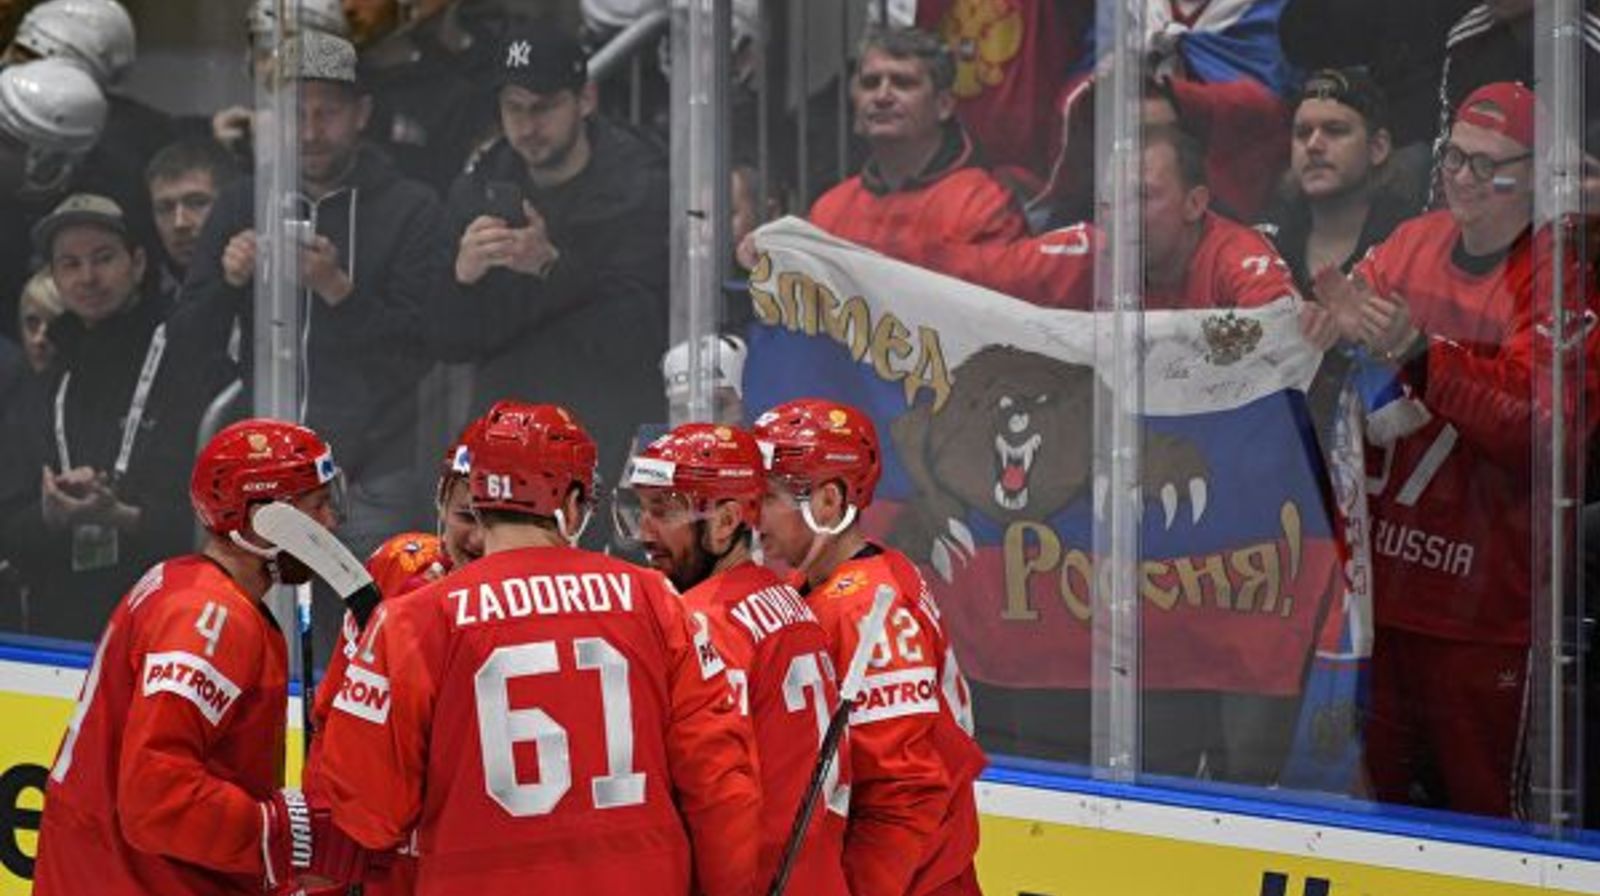 Российские хоккеисты ведут в матче со сборной Швеции